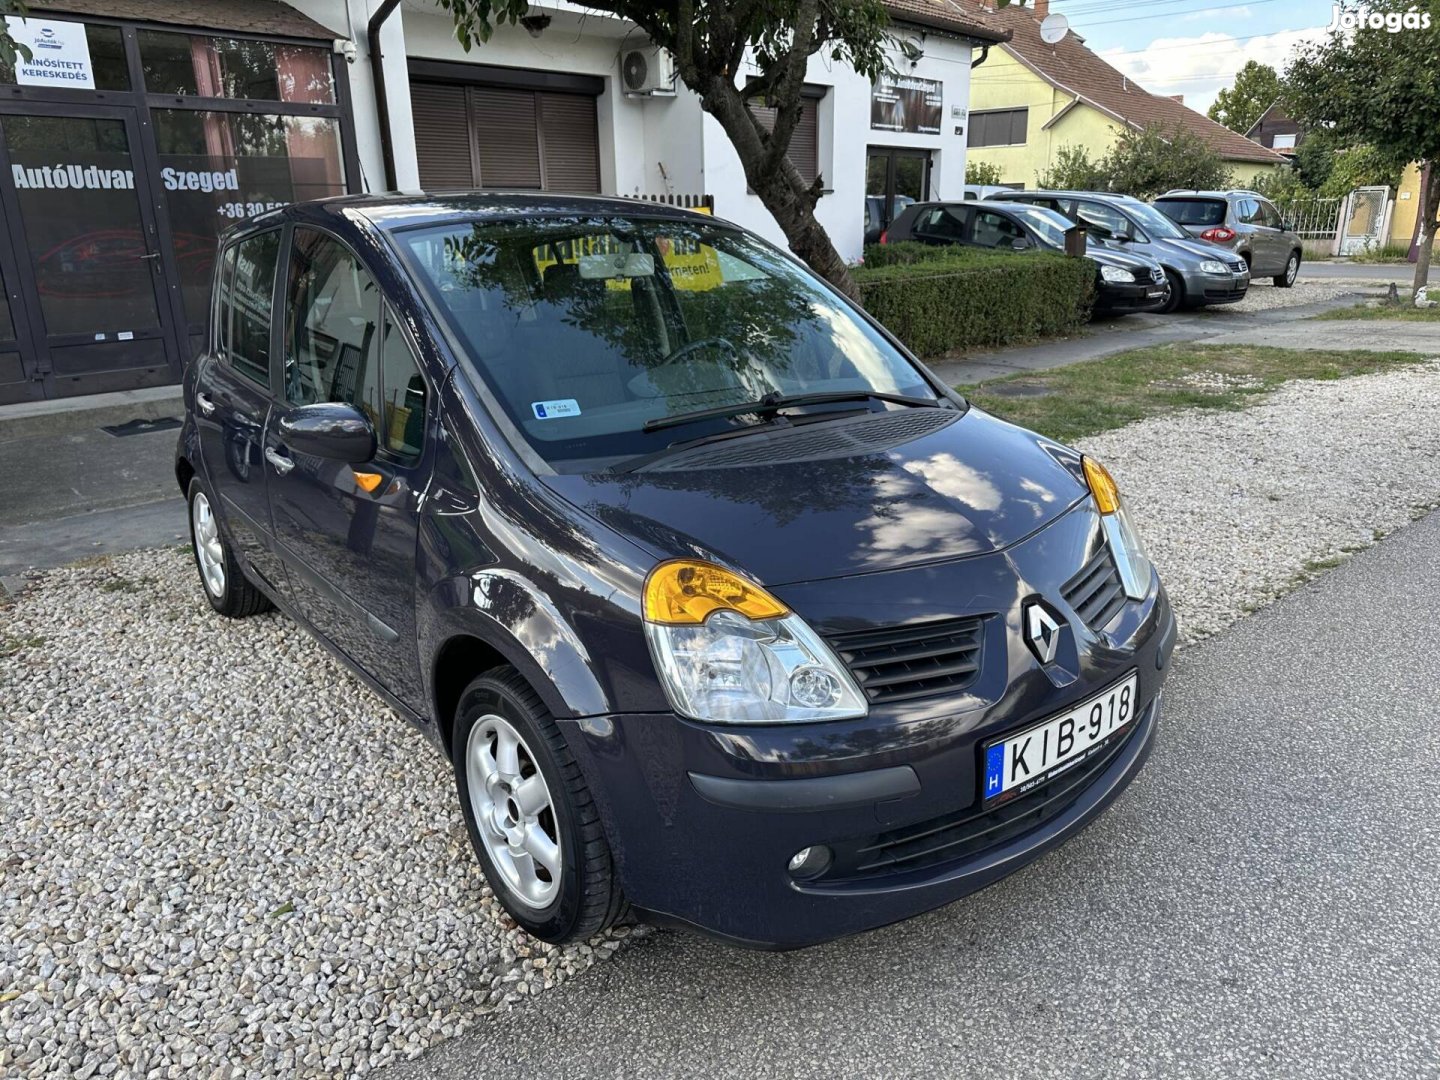 Renault Modus 1.5 dCi Privilege Magyarországi /...